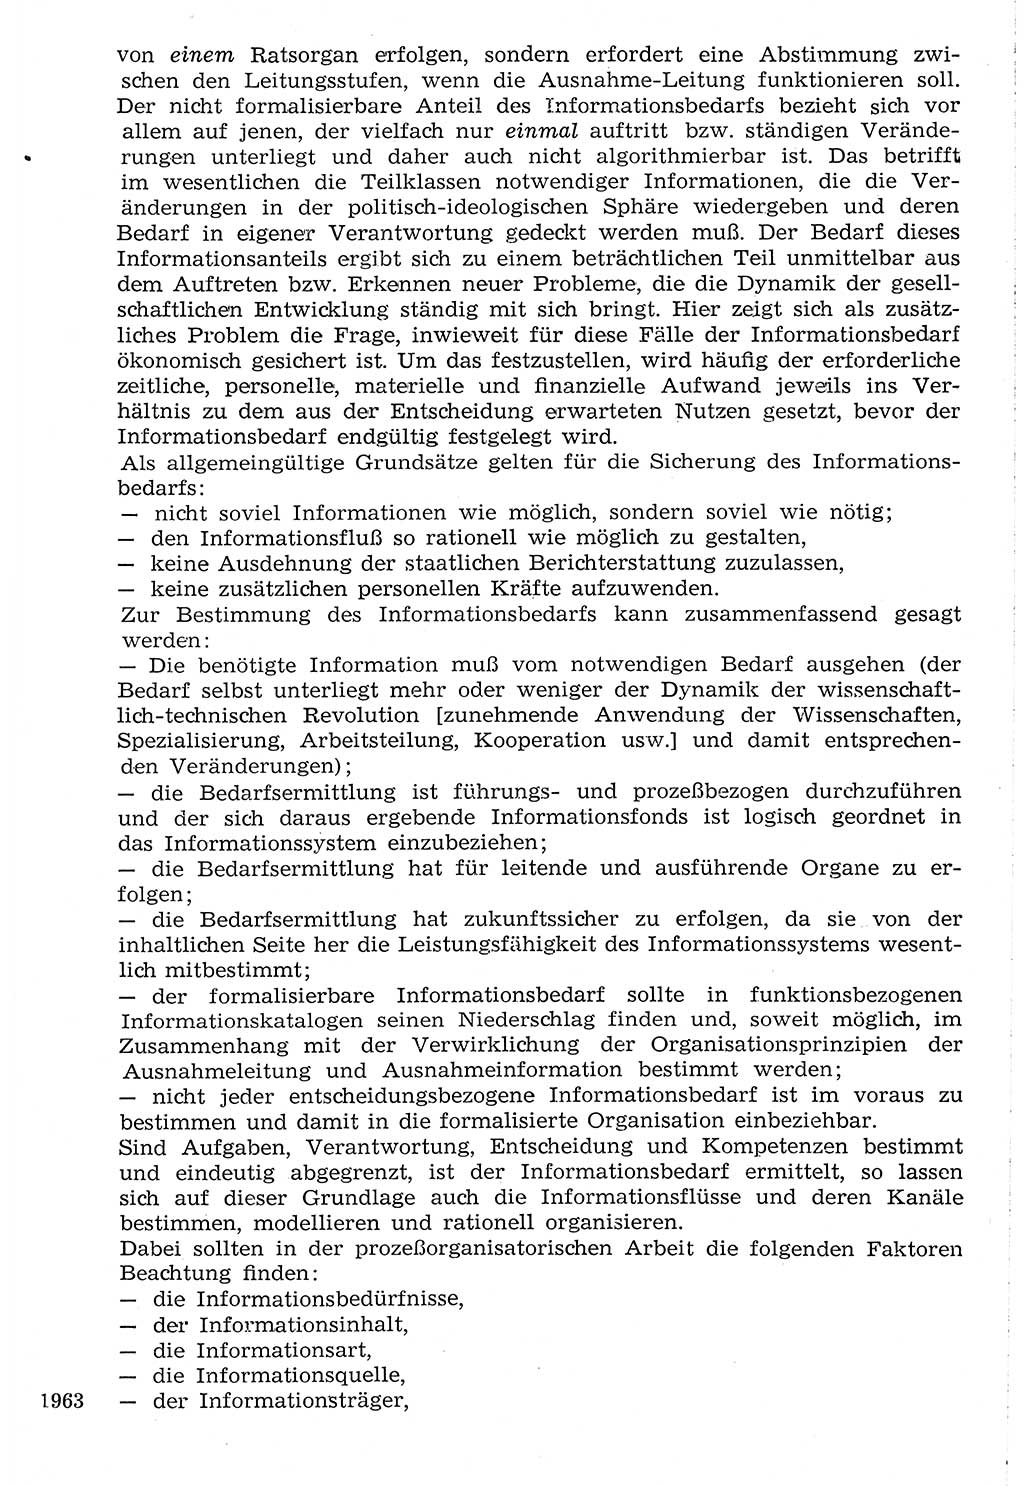 Staat und Recht (StuR), 17. Jahrgang [Deutsche Demokratische Republik (DDR)] 1968, Seite 1963 (StuR DDR 1968, S. 1963)